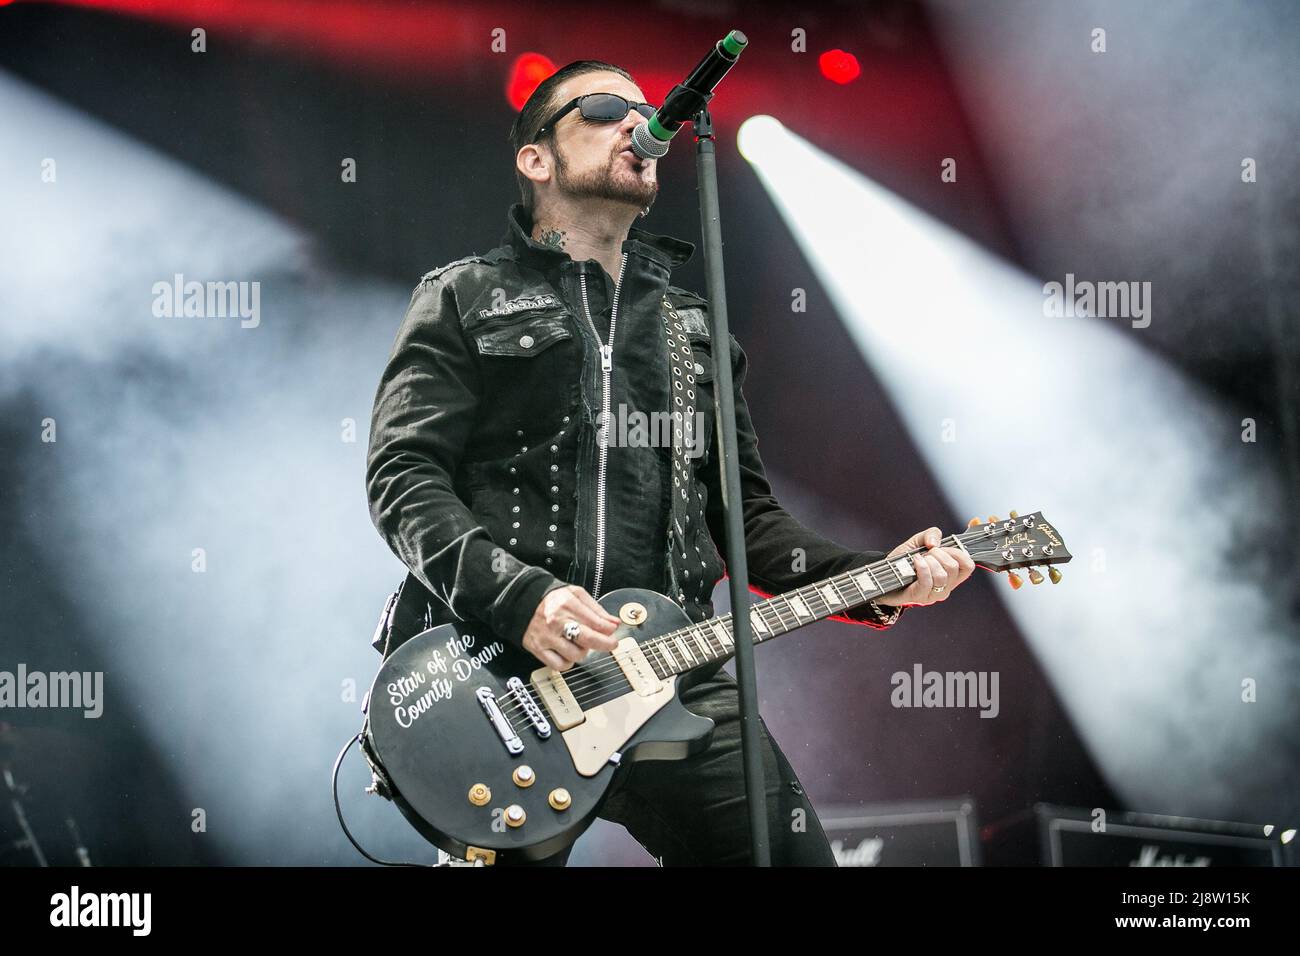 Belfast Rockstar Ricky Warwick von Black Star Riders und Thin Lizzy tritt live auf der Bühne auf Stockfoto